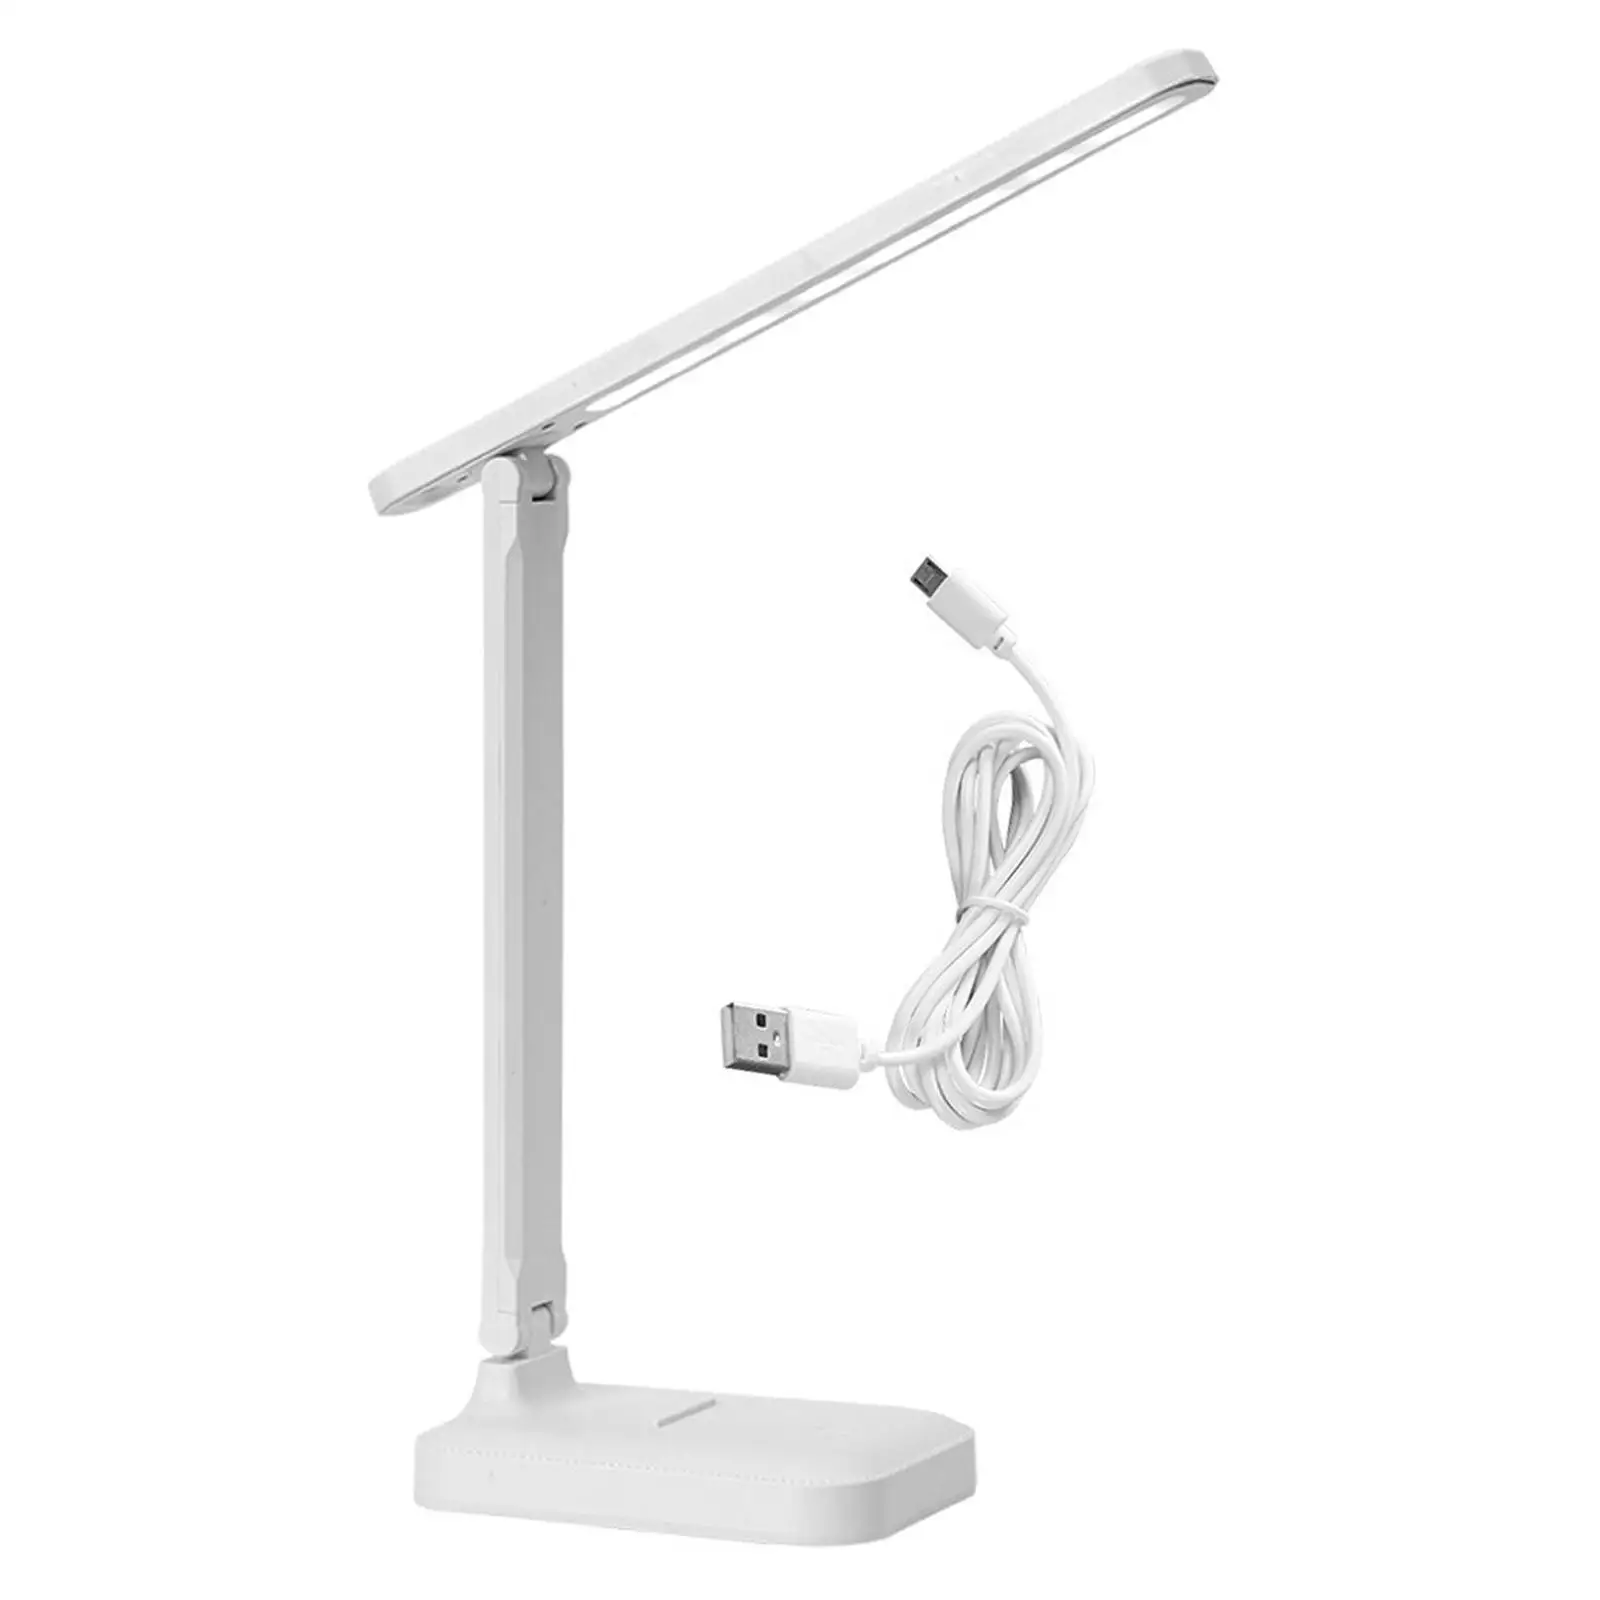 Foldable LED Desk Lamp Bedside Adjustable Lights Portable No Flicker Table Lamp Study Desk for Living Room Home Office Gift Dorm